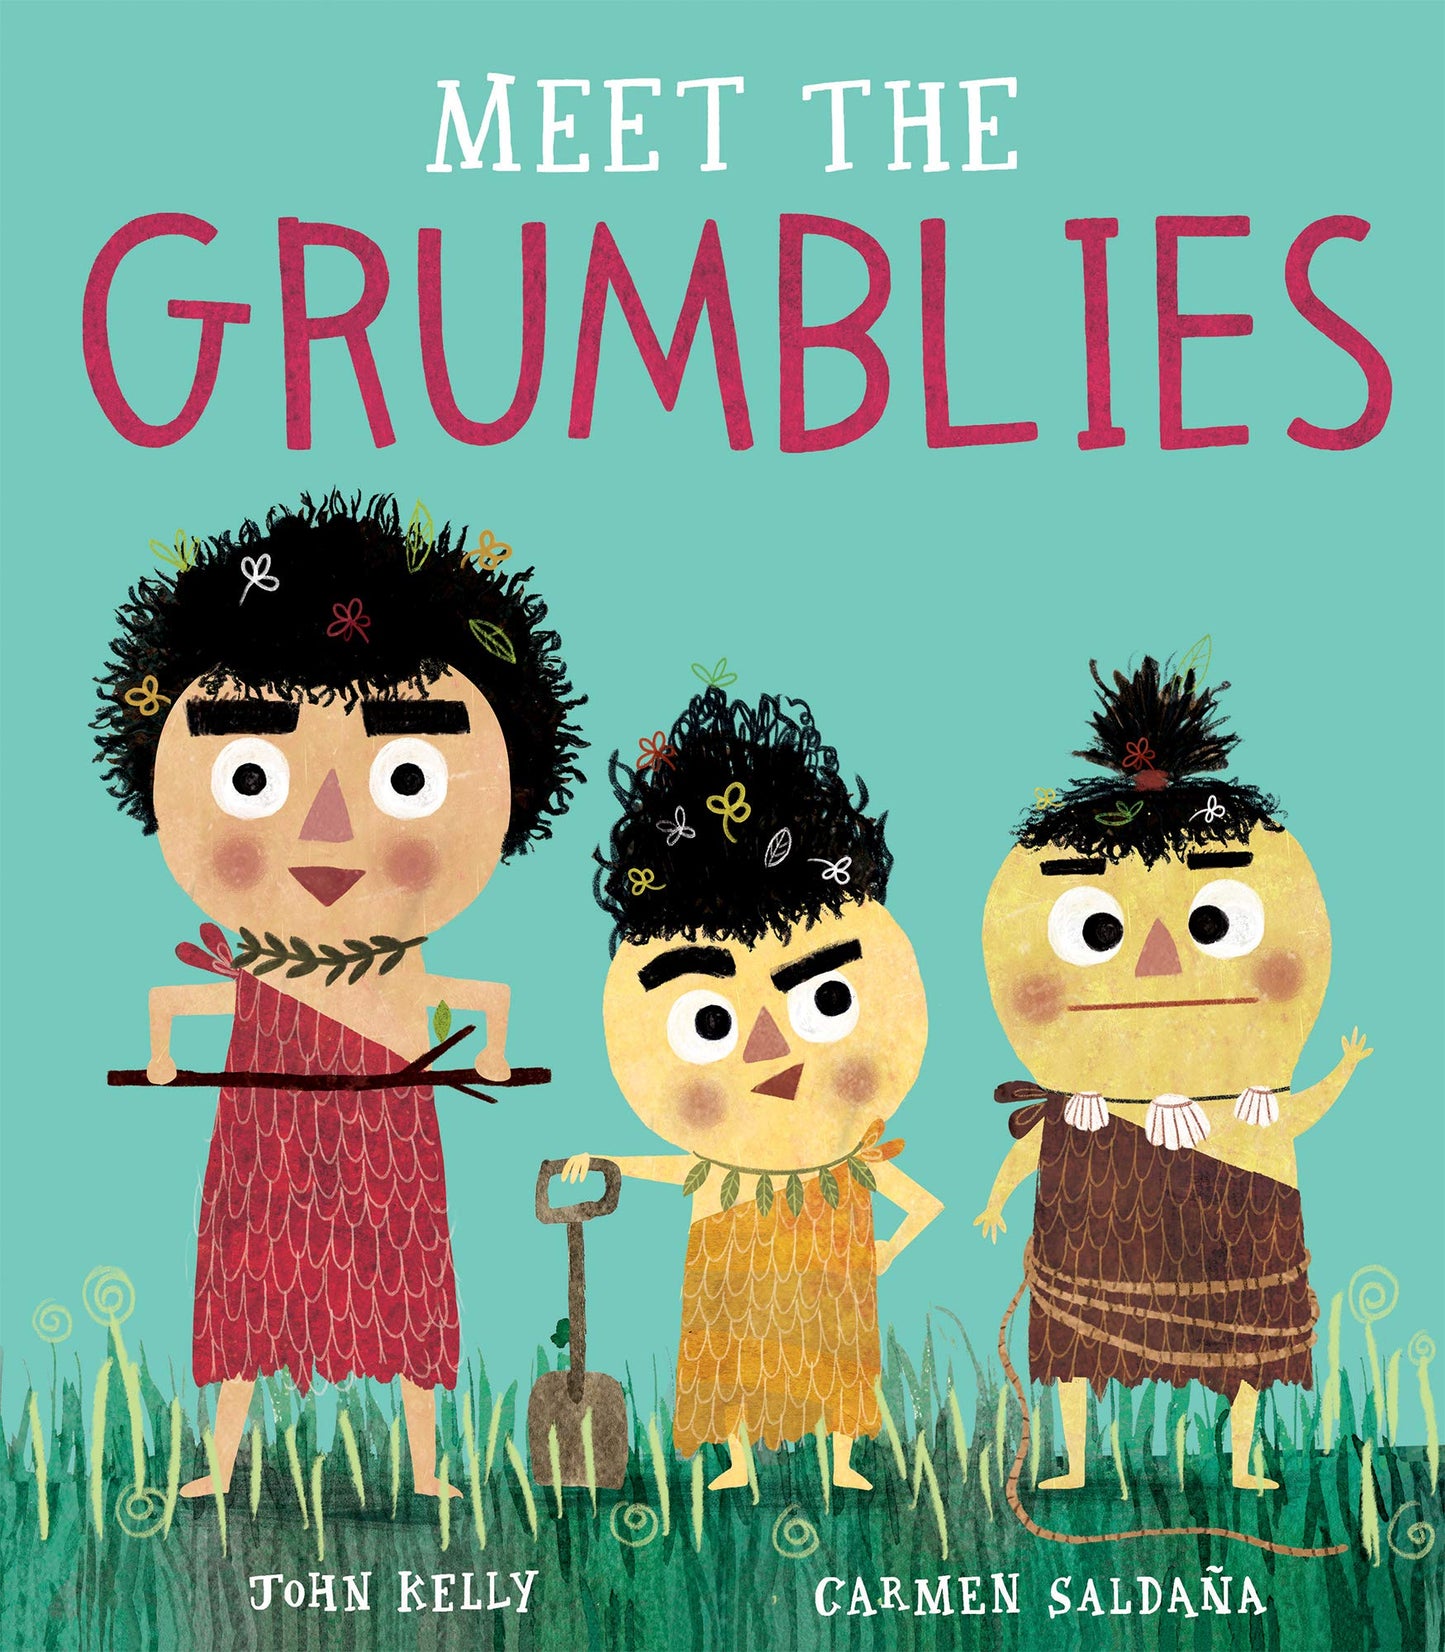 Meet the Grumblies by John Kelly & Carmen Saldana